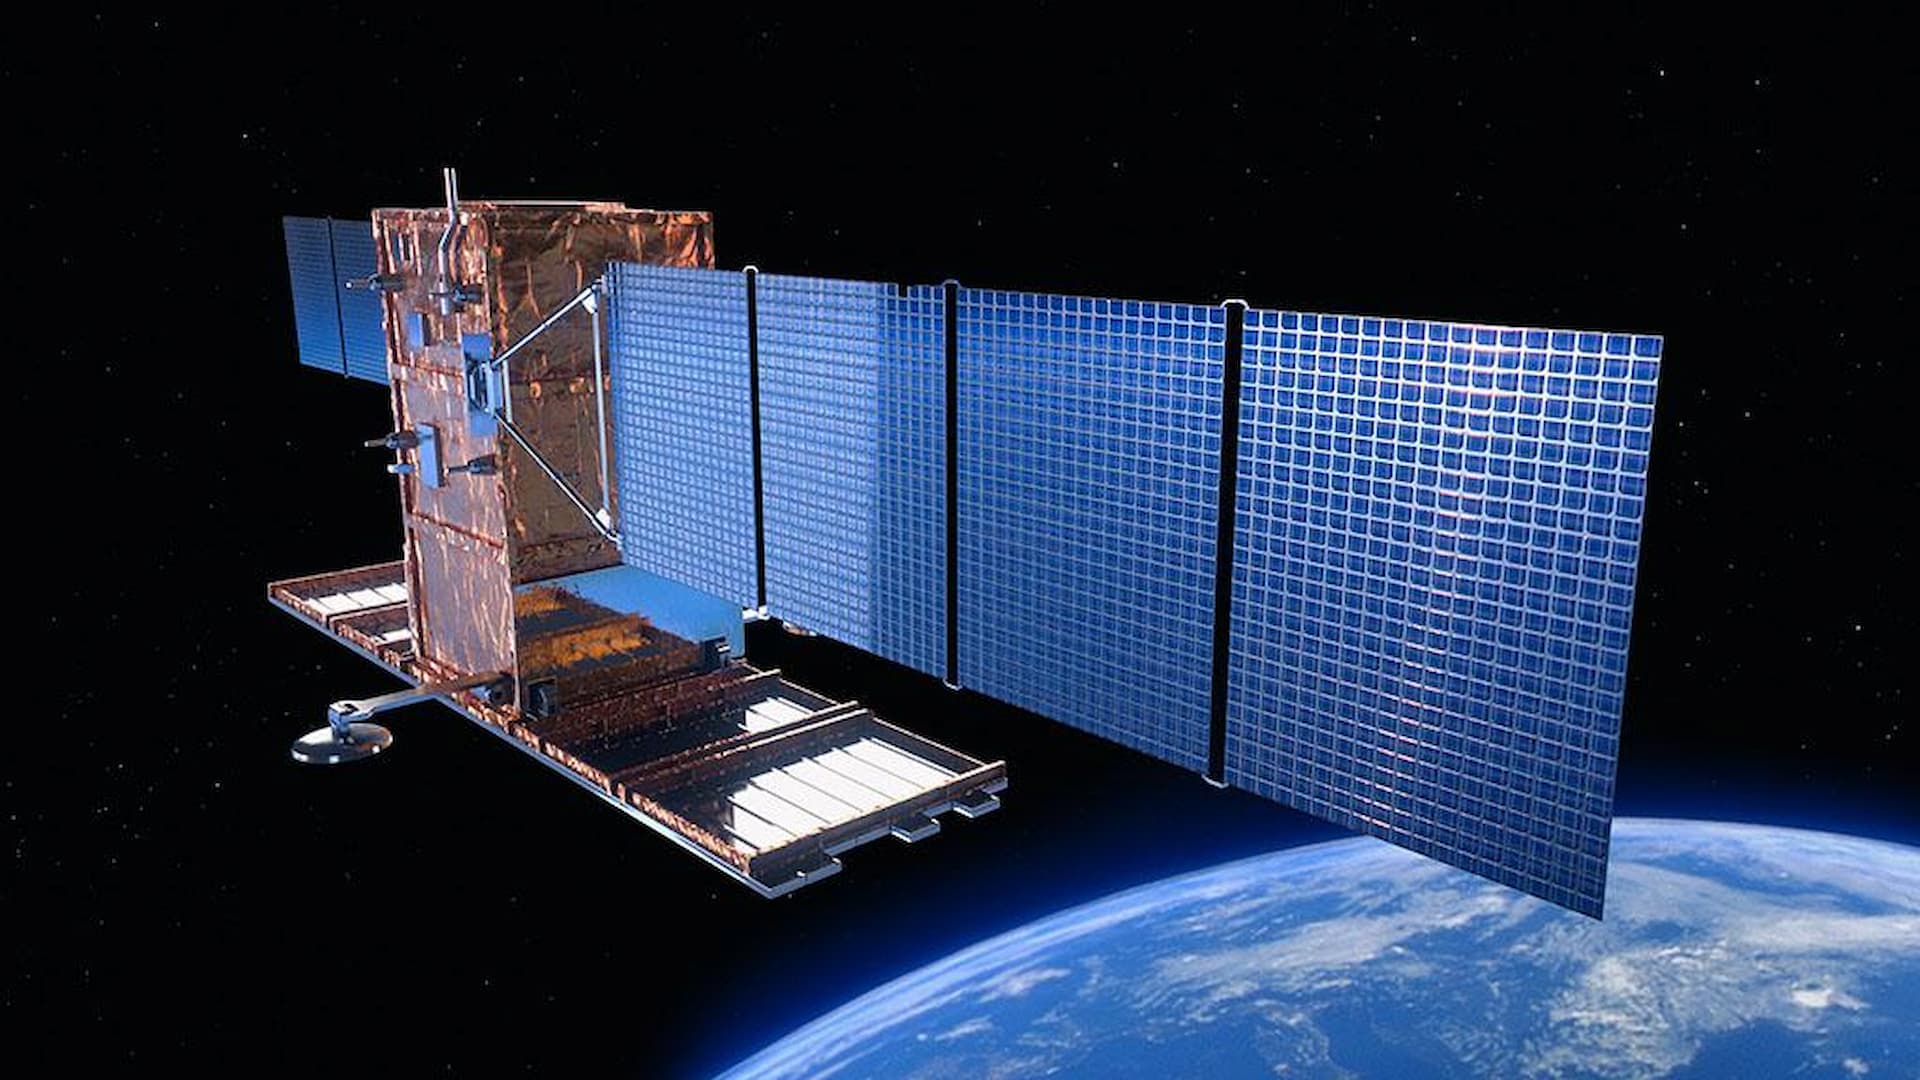 Il secondo satellite COSMO-SkyMed di Seconda Generazione (CSG) diventa operativo rafforzando ancora di più il consolidato ruolo e il contributo dell’Italia nel campo dell’Osservazione della Terra